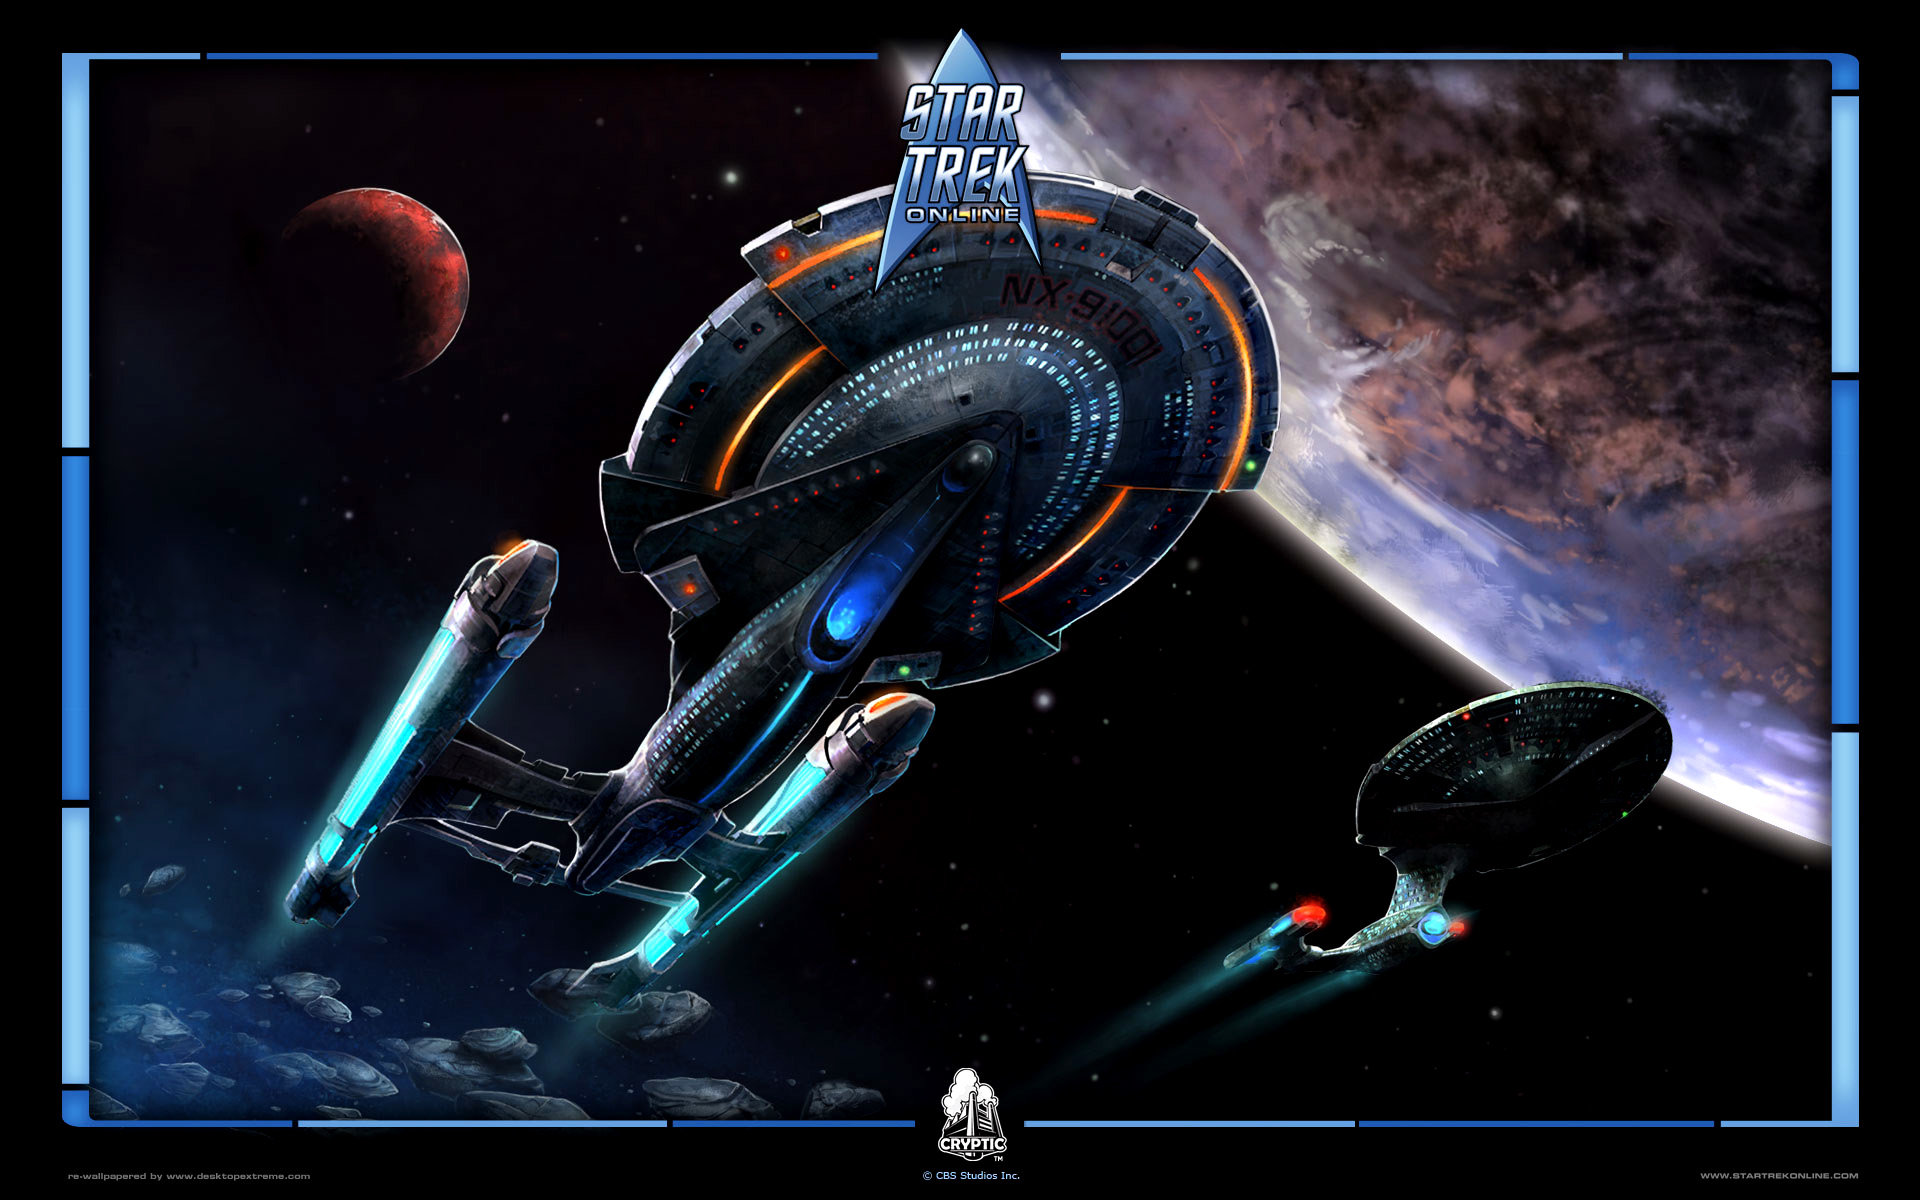 Best Star Trek Video Game wallpaper ID:276211 for High Resolution hd 1920x1200 desktop